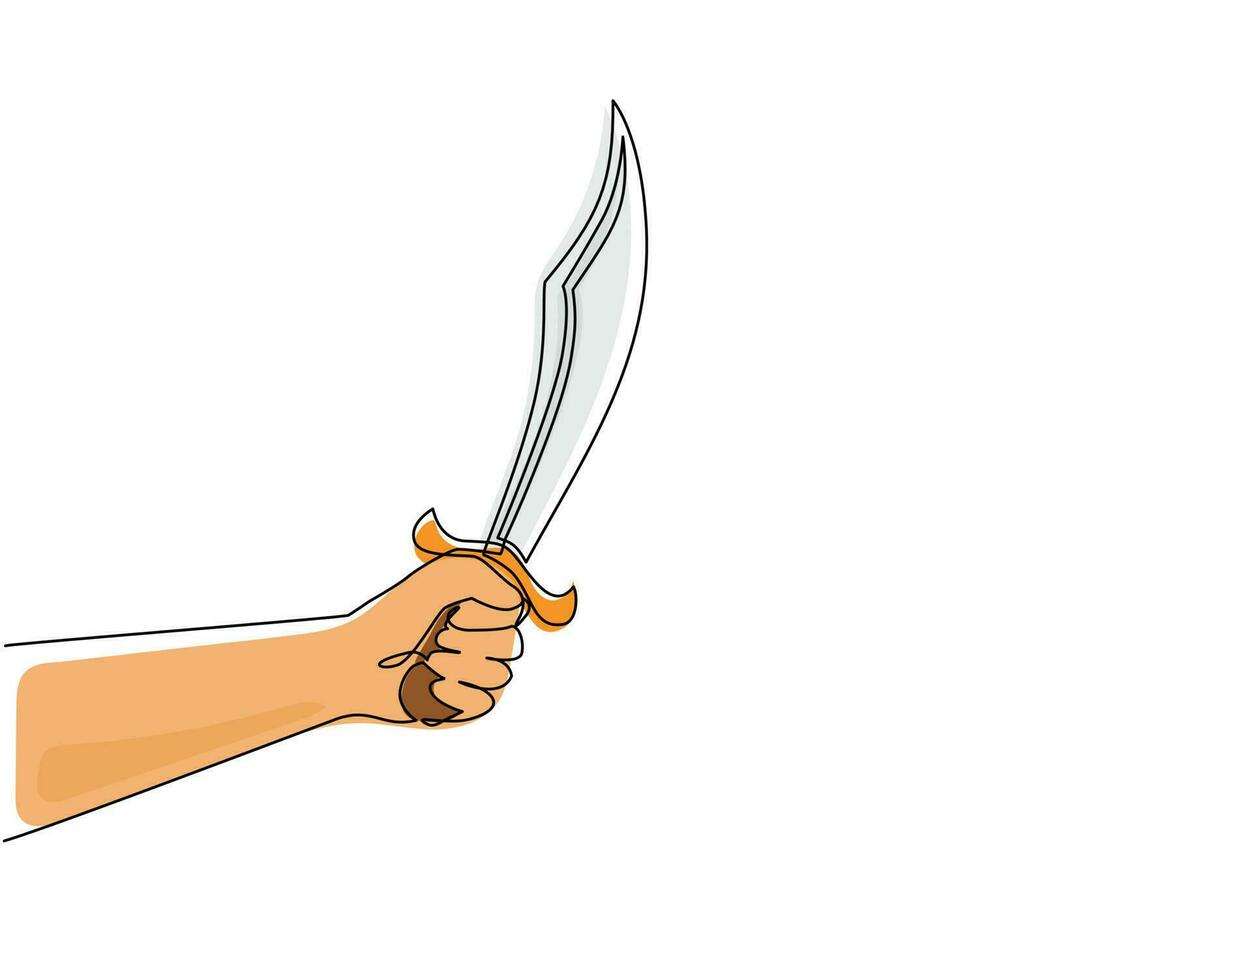 único desenho de linha contínua homem segurar o facão. faca machadinha com lâmina longa de aço. ferramenta manual para cortar galhos e madeira conhecida como facão. uma linha desenhar ilustração em vetor design gráfico